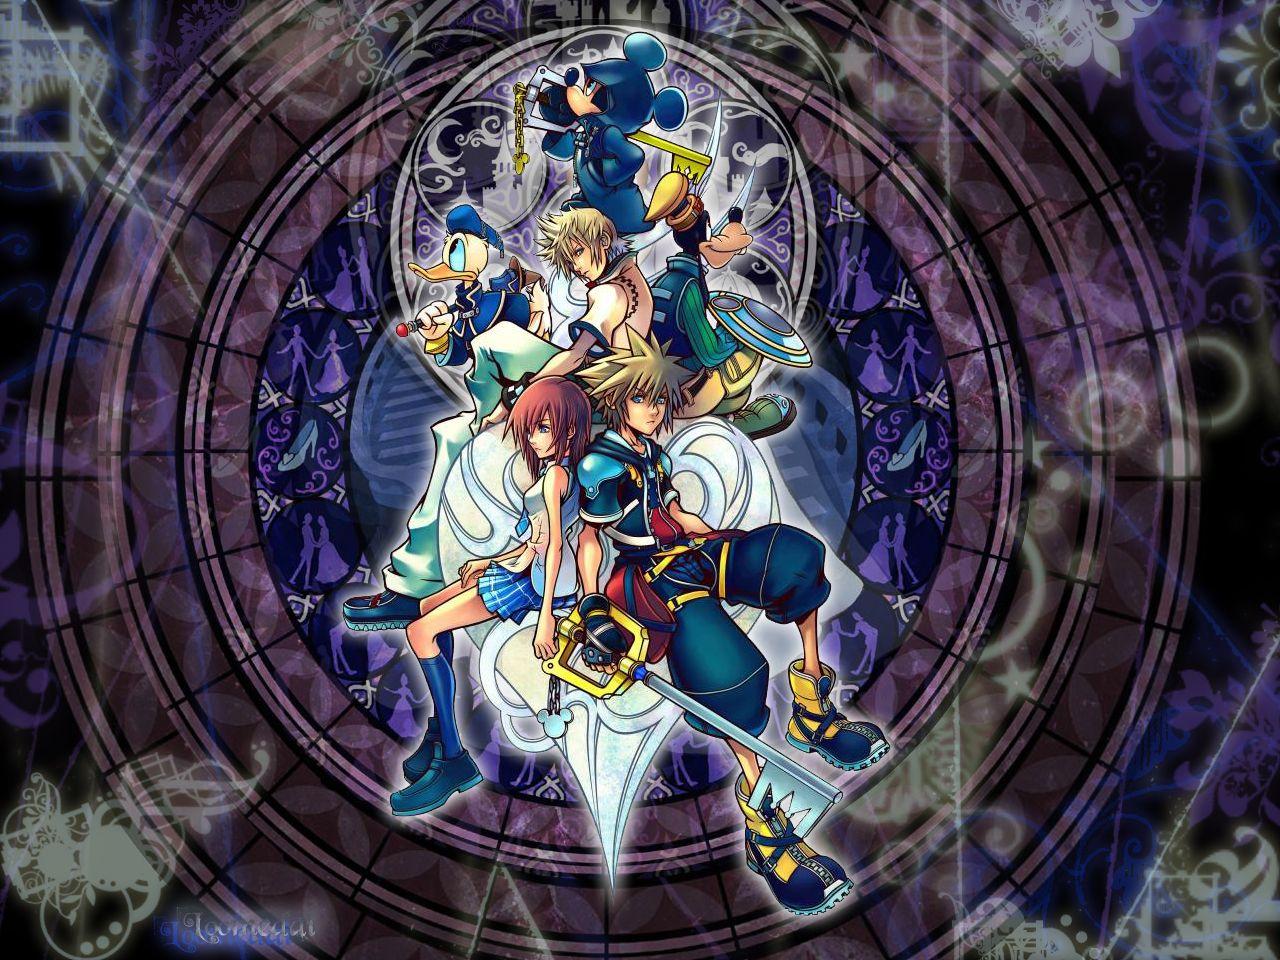 Kingdom Hearts Wallpaper HD 9019 1280x960 px